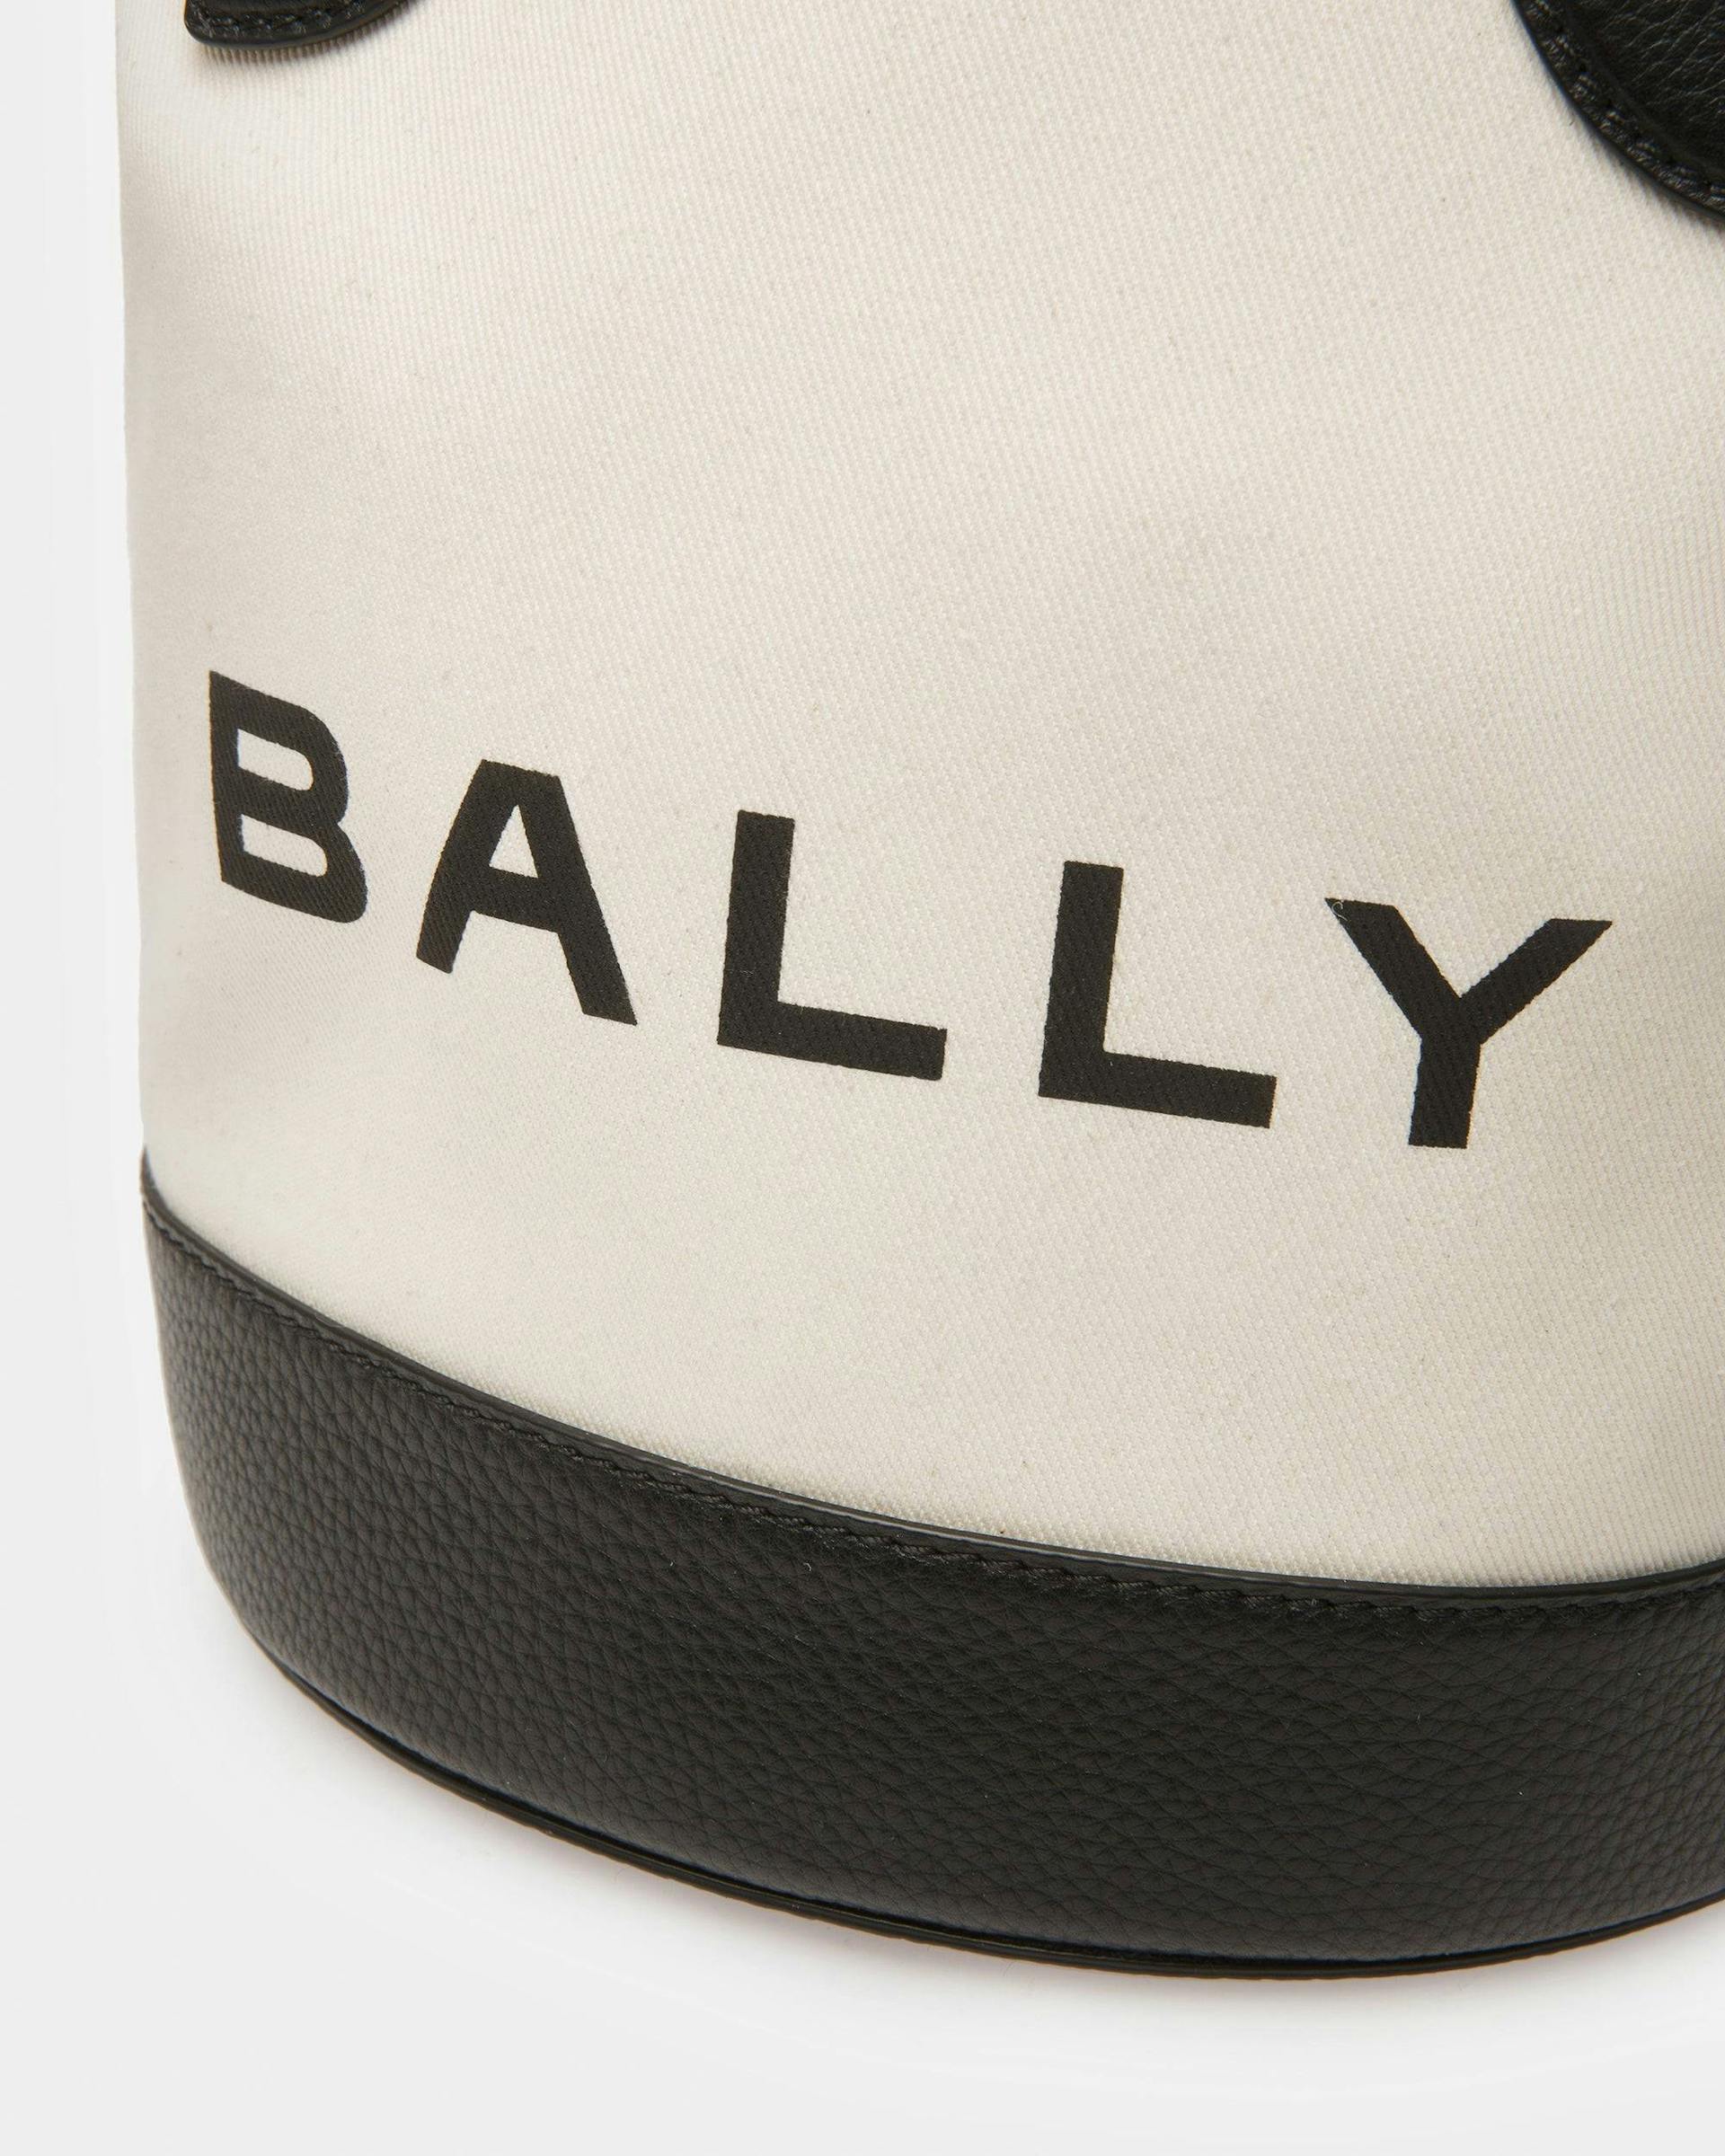 Bar バケットバッグ ナチュラル＆ブラック ファブリック - 女性 - Bally - 06